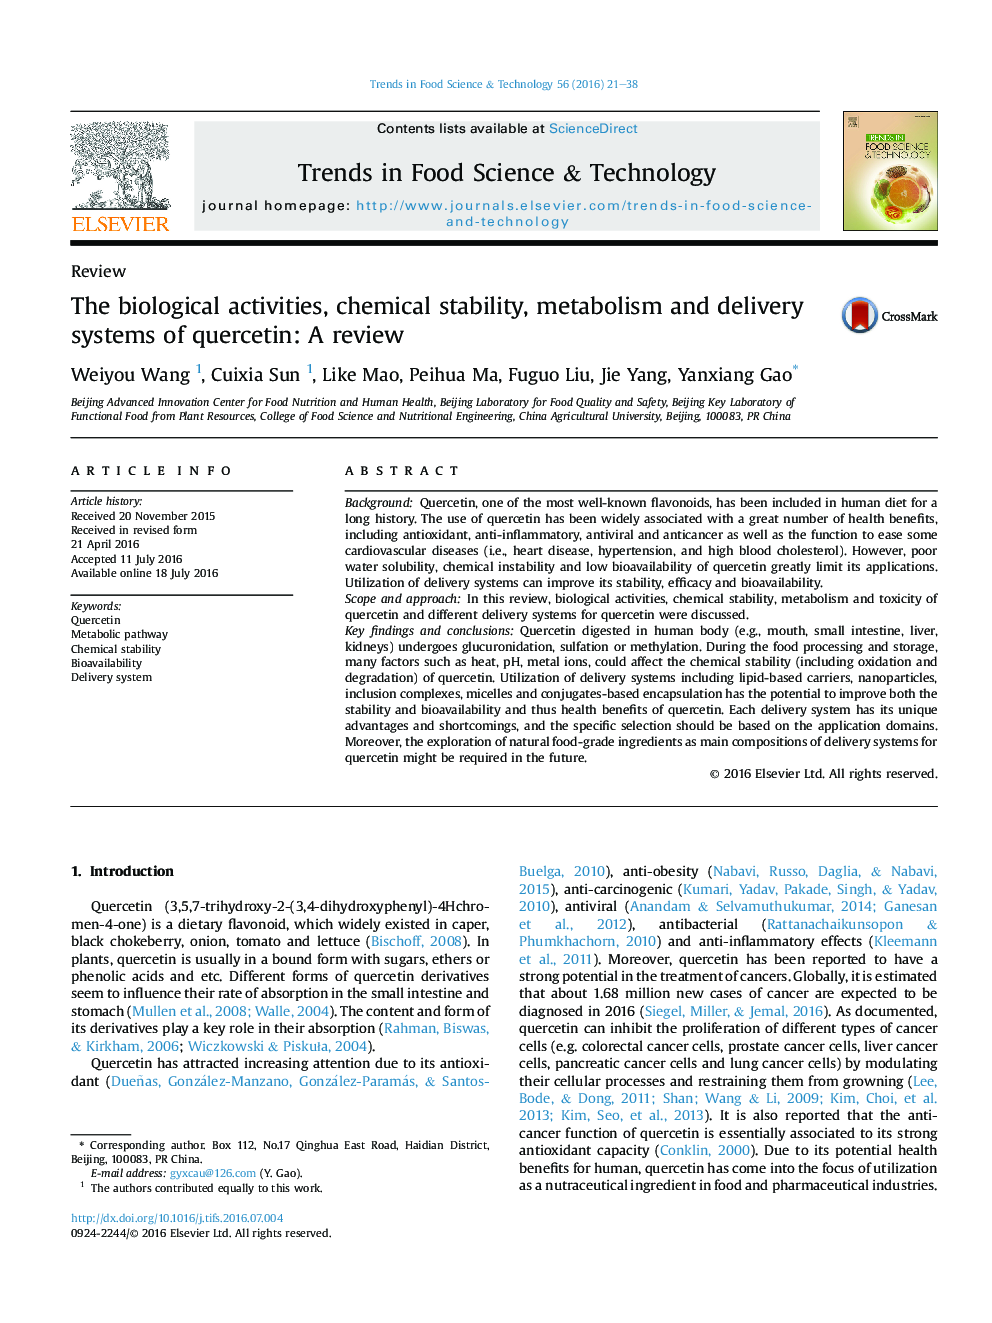 فعالیت های بیولوژیکی، پایداری شیمیایی، متابولیسم و ​​سیستم های تحویل کورستین: یک بررسی 